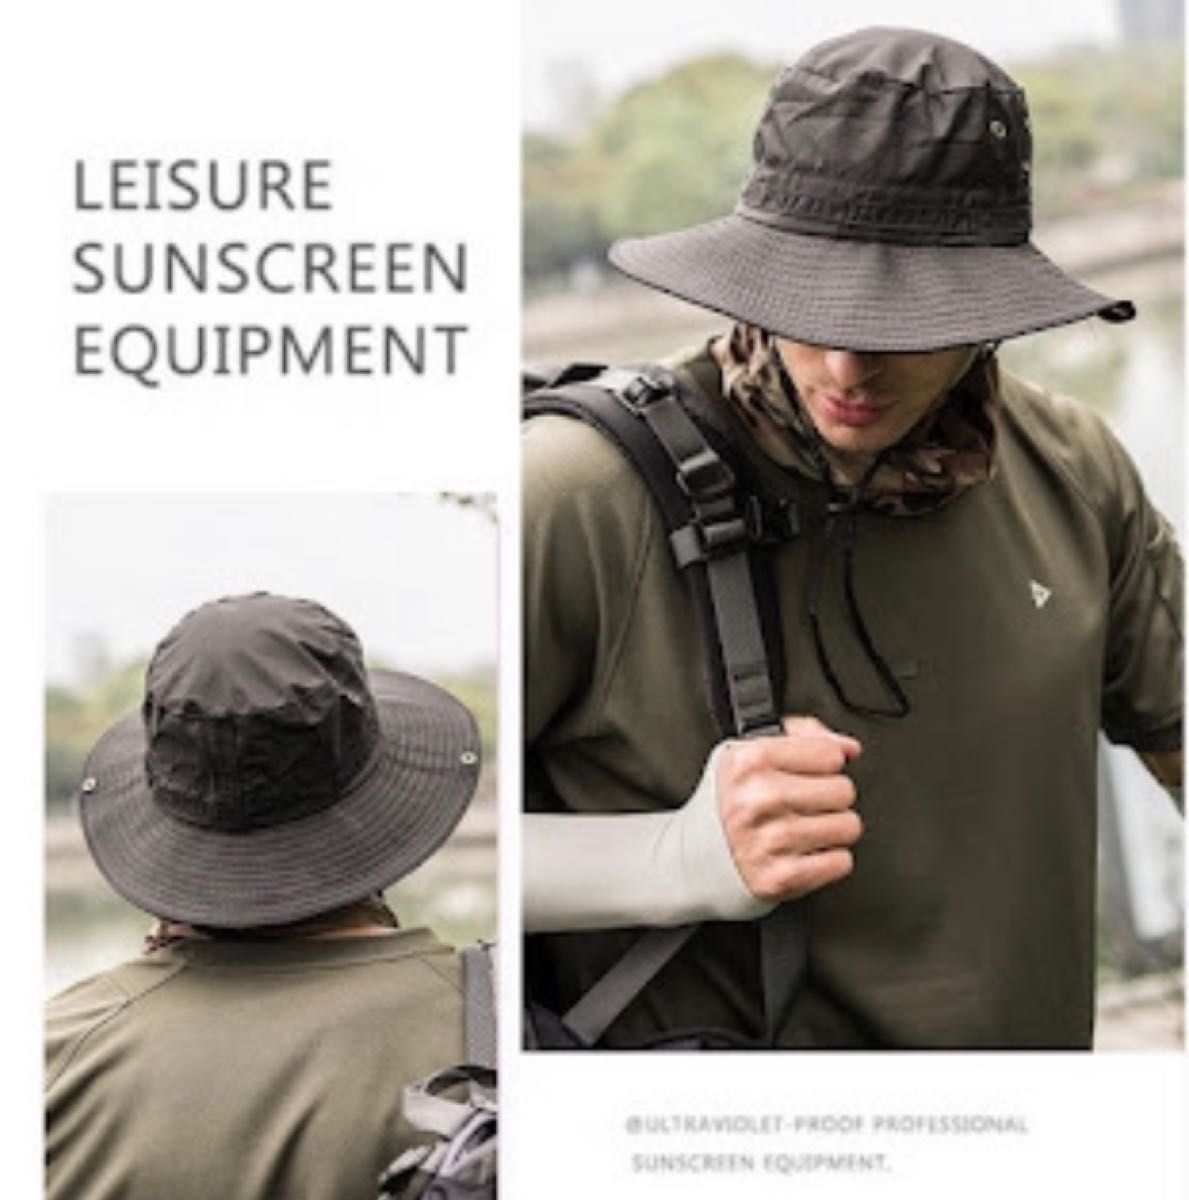 帽子 サファリハット バケットハット 2way  黒 頭周57cm メンズ キャップ 日焼け予防 紫外線対策 熱中症予防